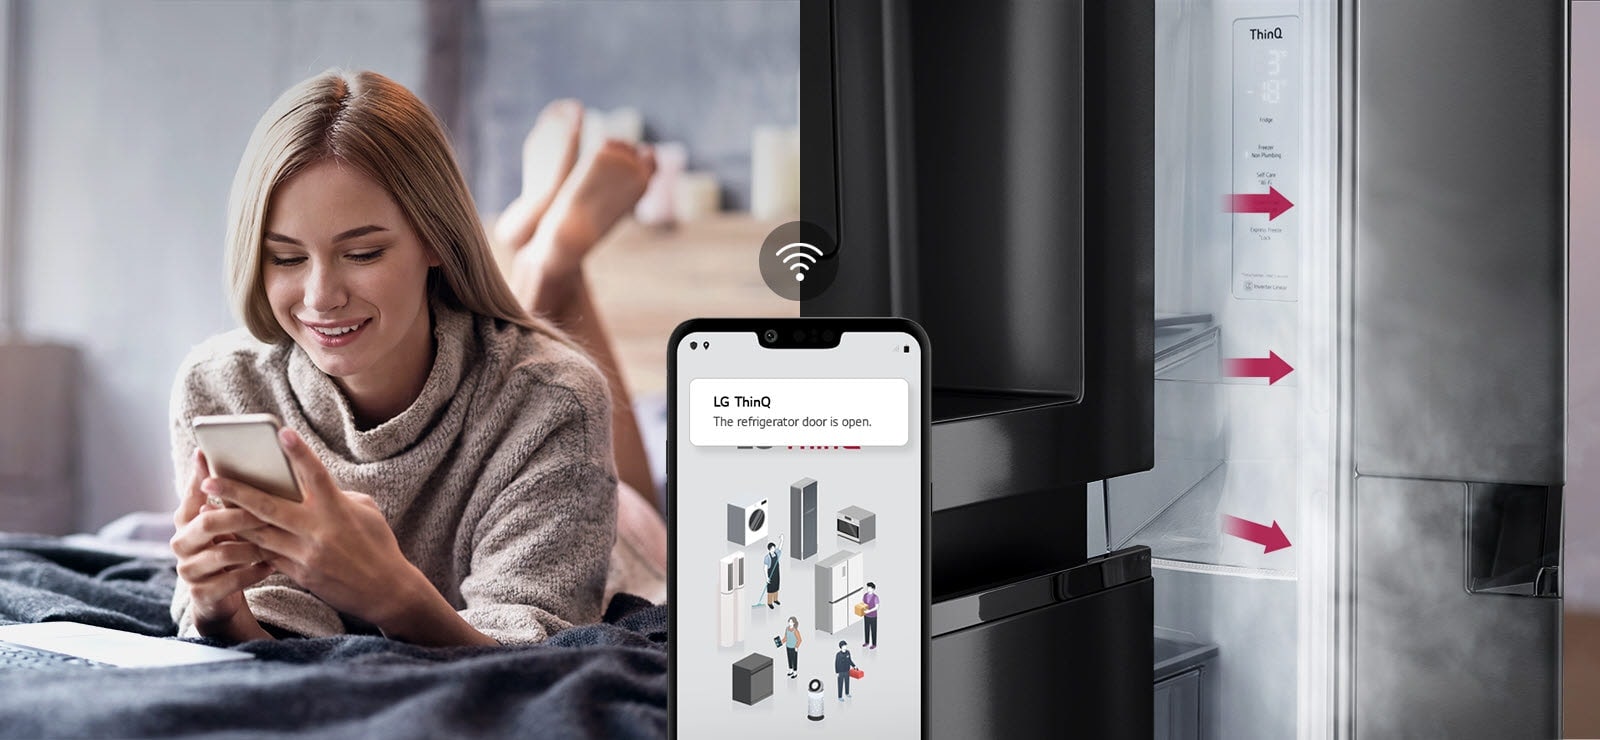 Eine Frau liegt auf einem Bett und betrachtet ein Bild auf ihrem Telefon-Display. Das zweite Bild zeigt, dass die Kühlschranktür offen gelassen wurde. Im Vordergrund der beiden Bilder befindet sich das Telefon-Display, das die Benachrichtigungen der LG-ThinQ-App und das WLAN-Symbol über dem Telefon anzeigt.